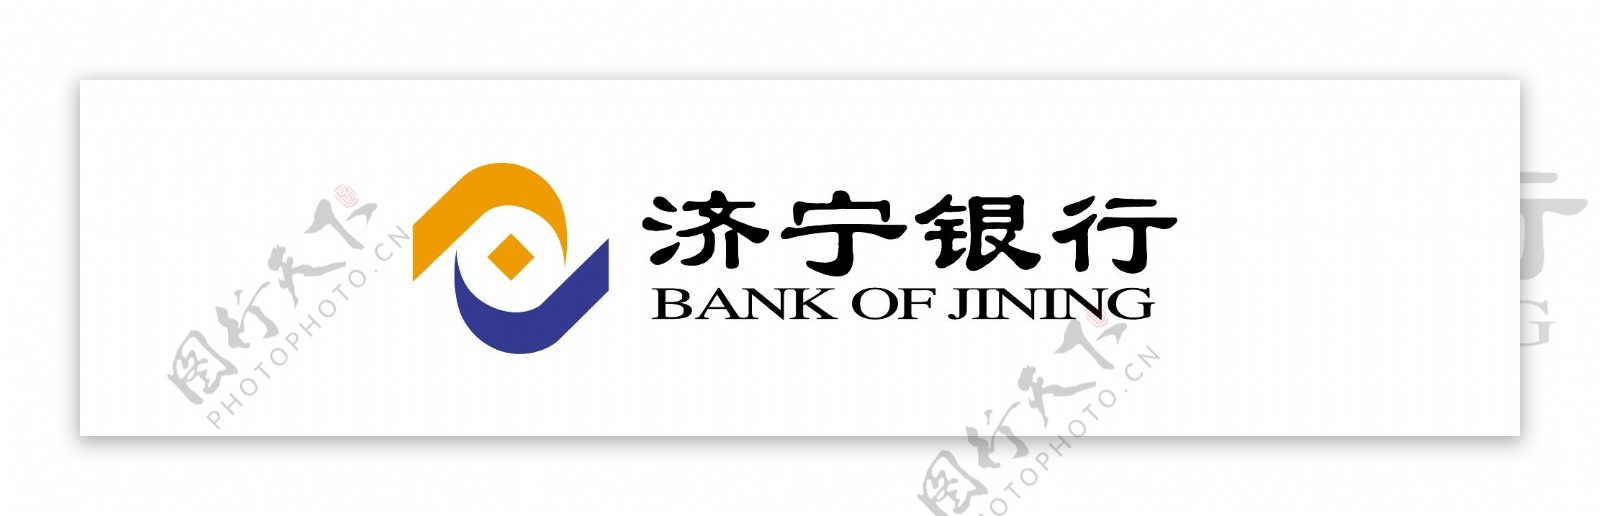 济宁银行logo图片